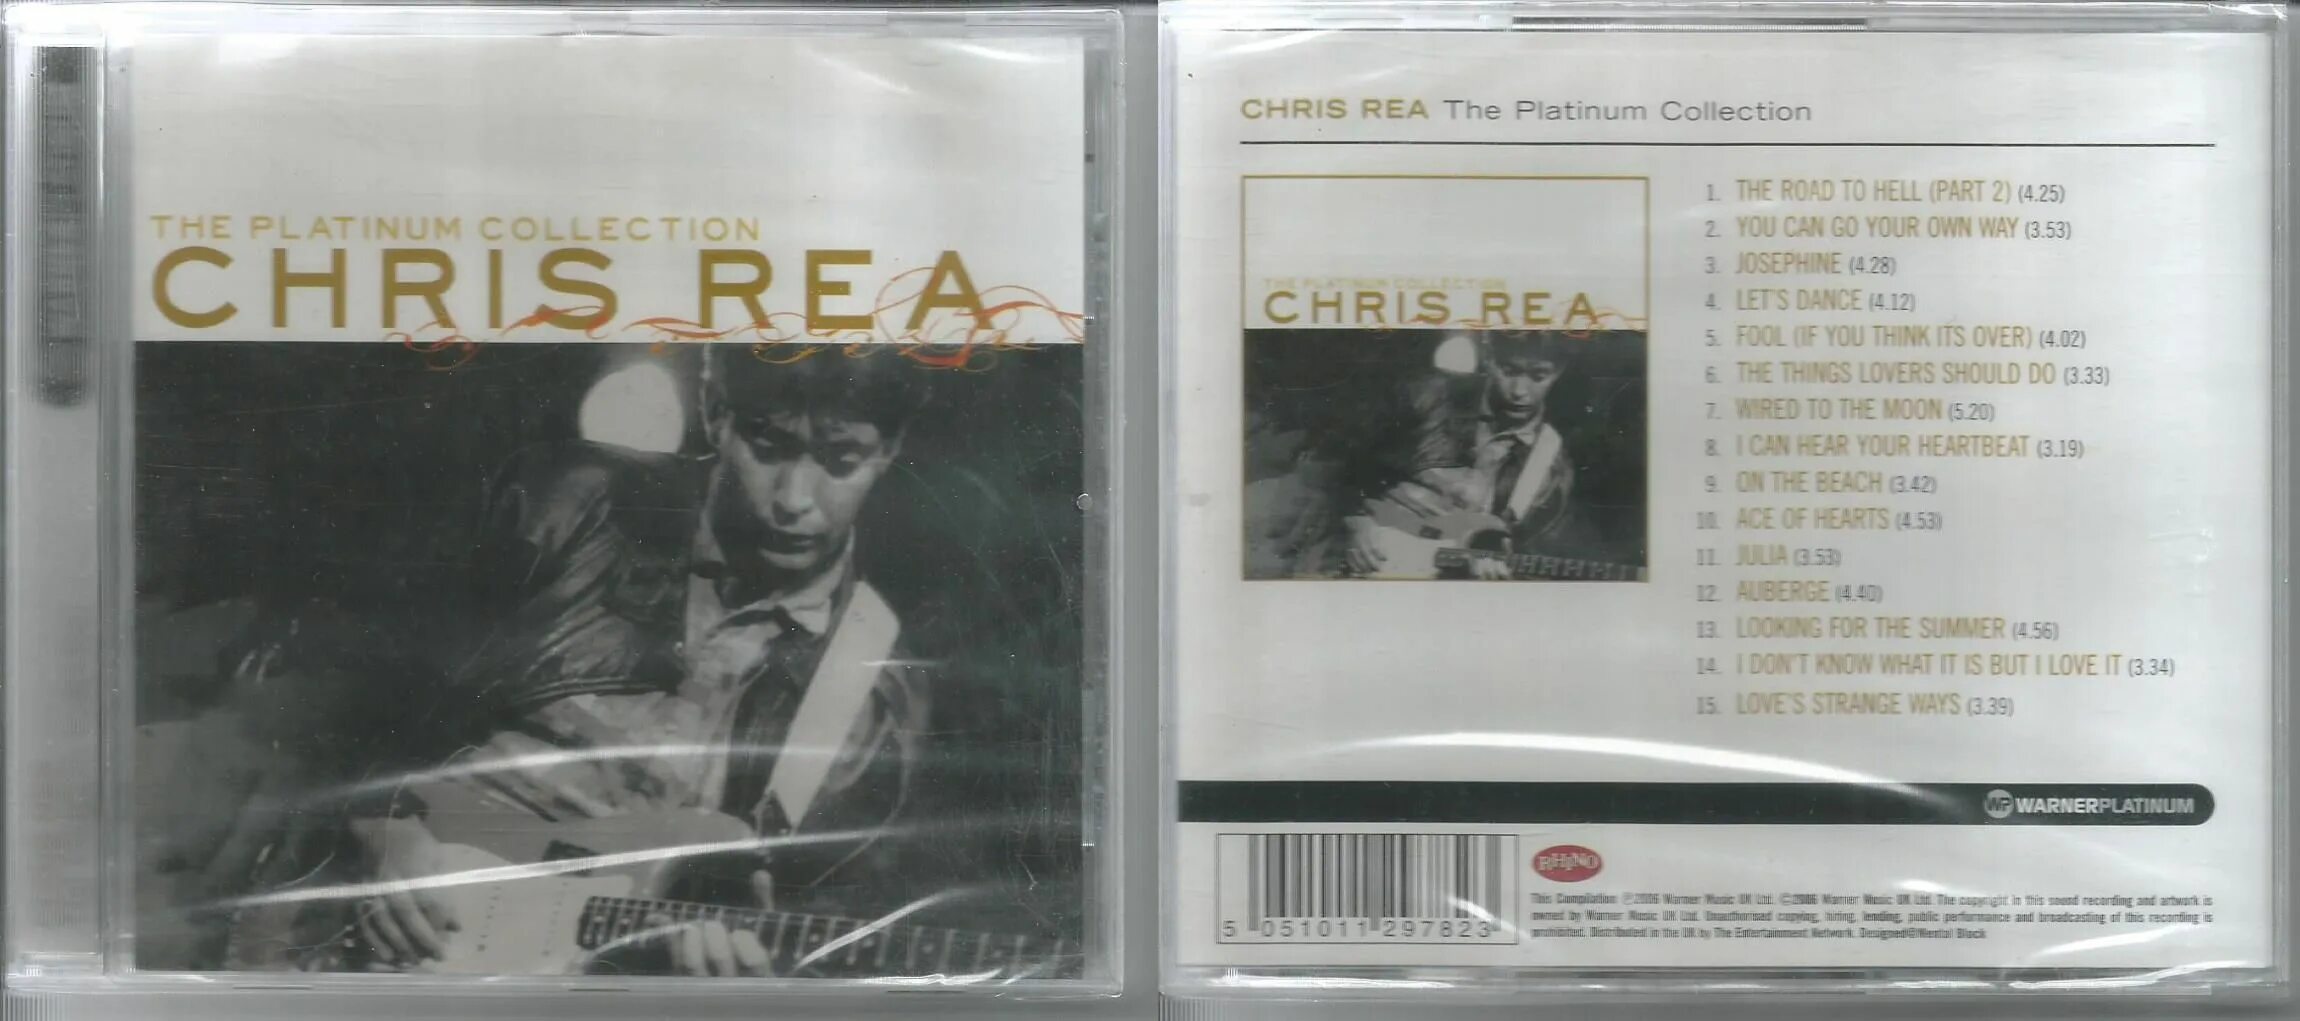 Chris Rea-the Platinum. Chris Rea the Platinum collection. Chris Rea 1997 - Platinum.